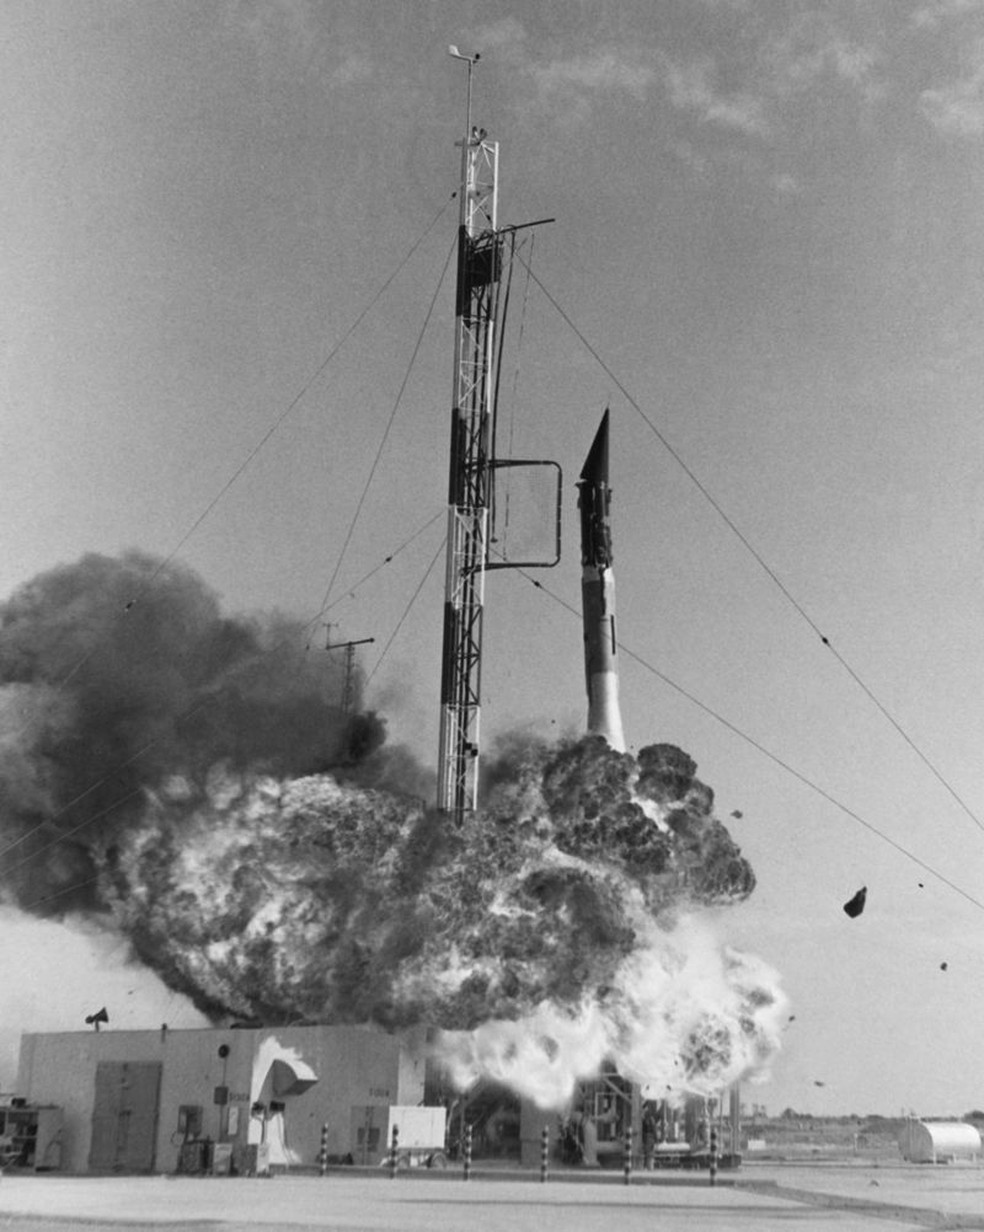 Imagens da explosão do Vanguard deram volta ao mundo e prejudicaram credibilidade do programa espacial dos Estados Unidos — Foto: Getty Images via BBC